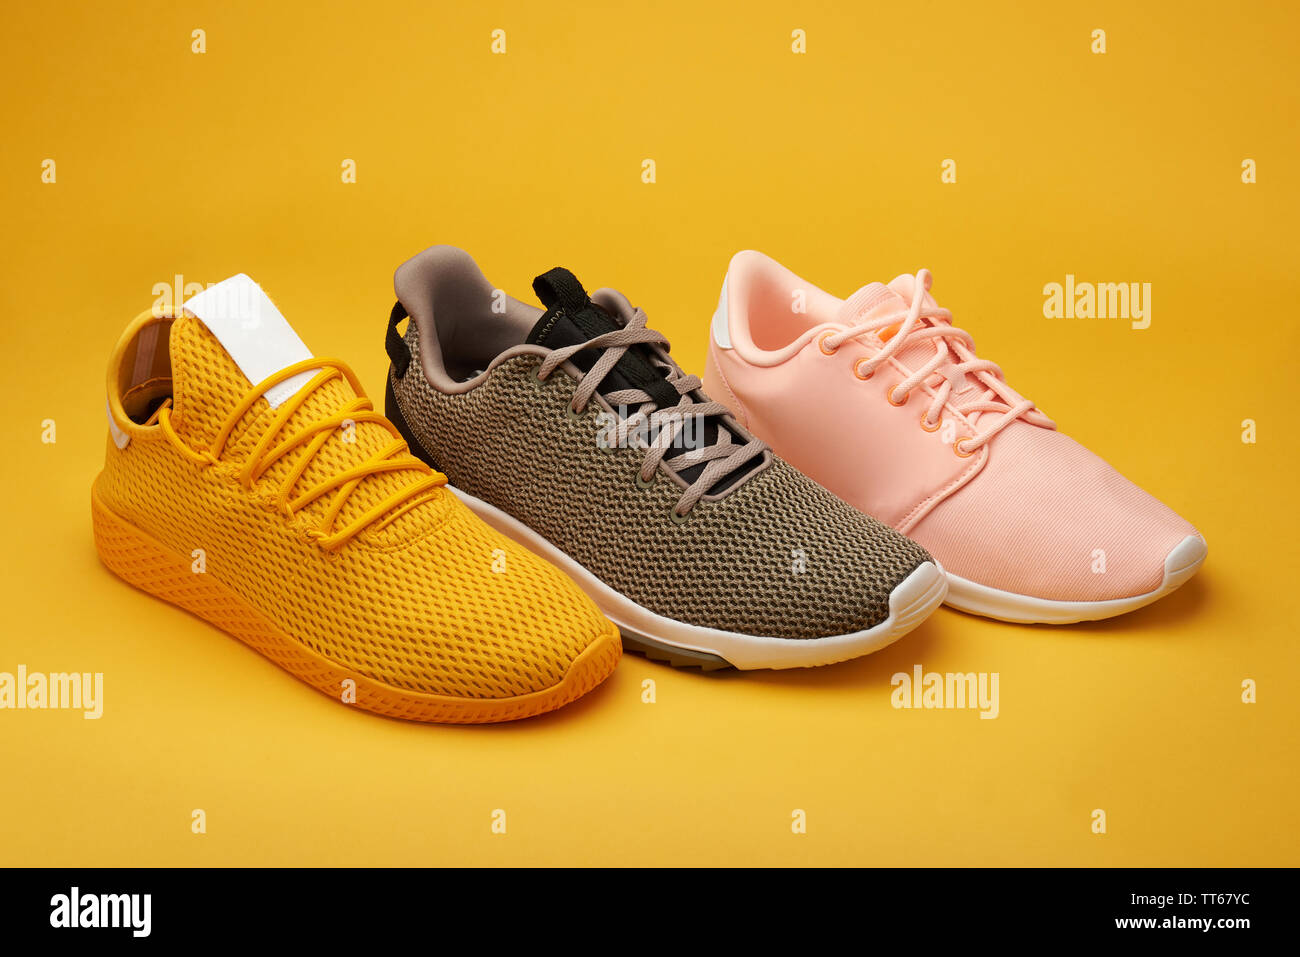 Grupo de coloridos zapatos deportivos pararse sobre fondo naranja Foto de stock